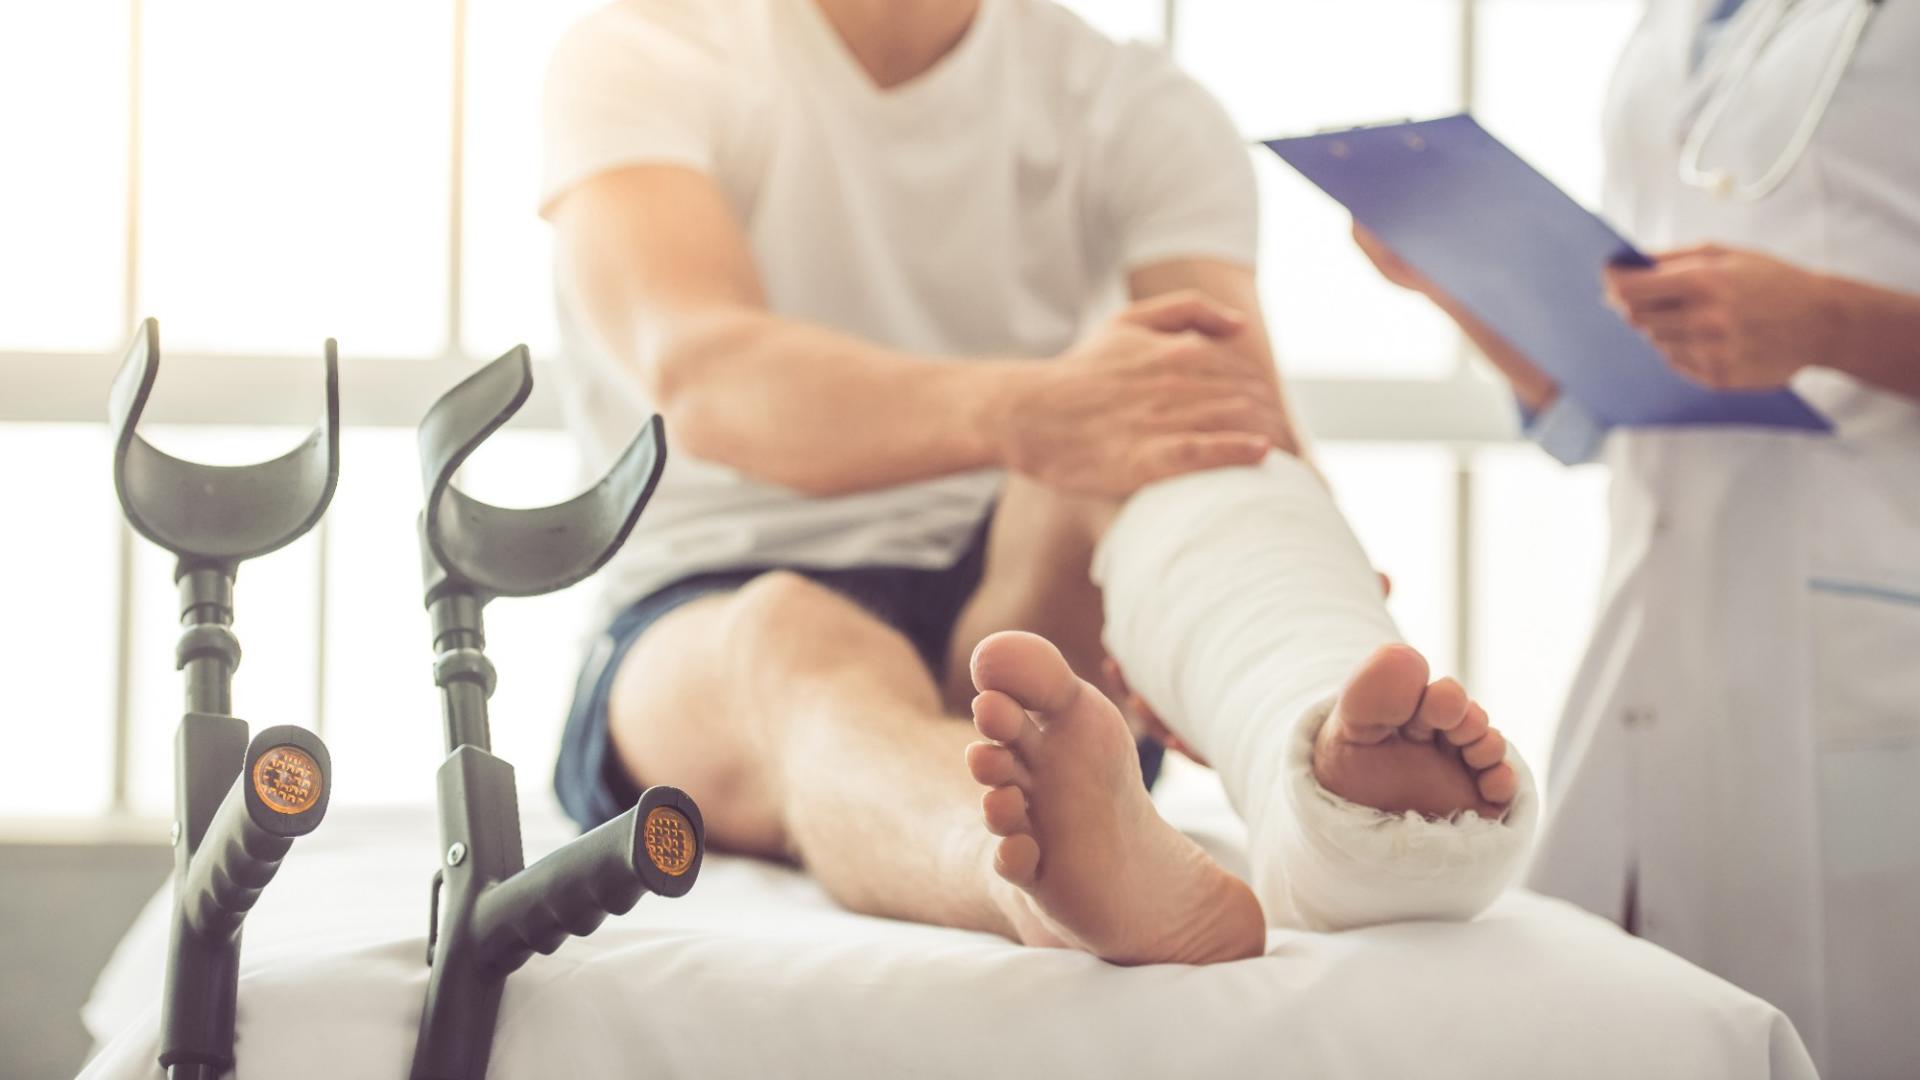 Ein Mann sitzt mit einem gebrochenen Fuß auf einem Krankenbett und wird von einem Arzt beraten. Neben ihm stehen die Krücken